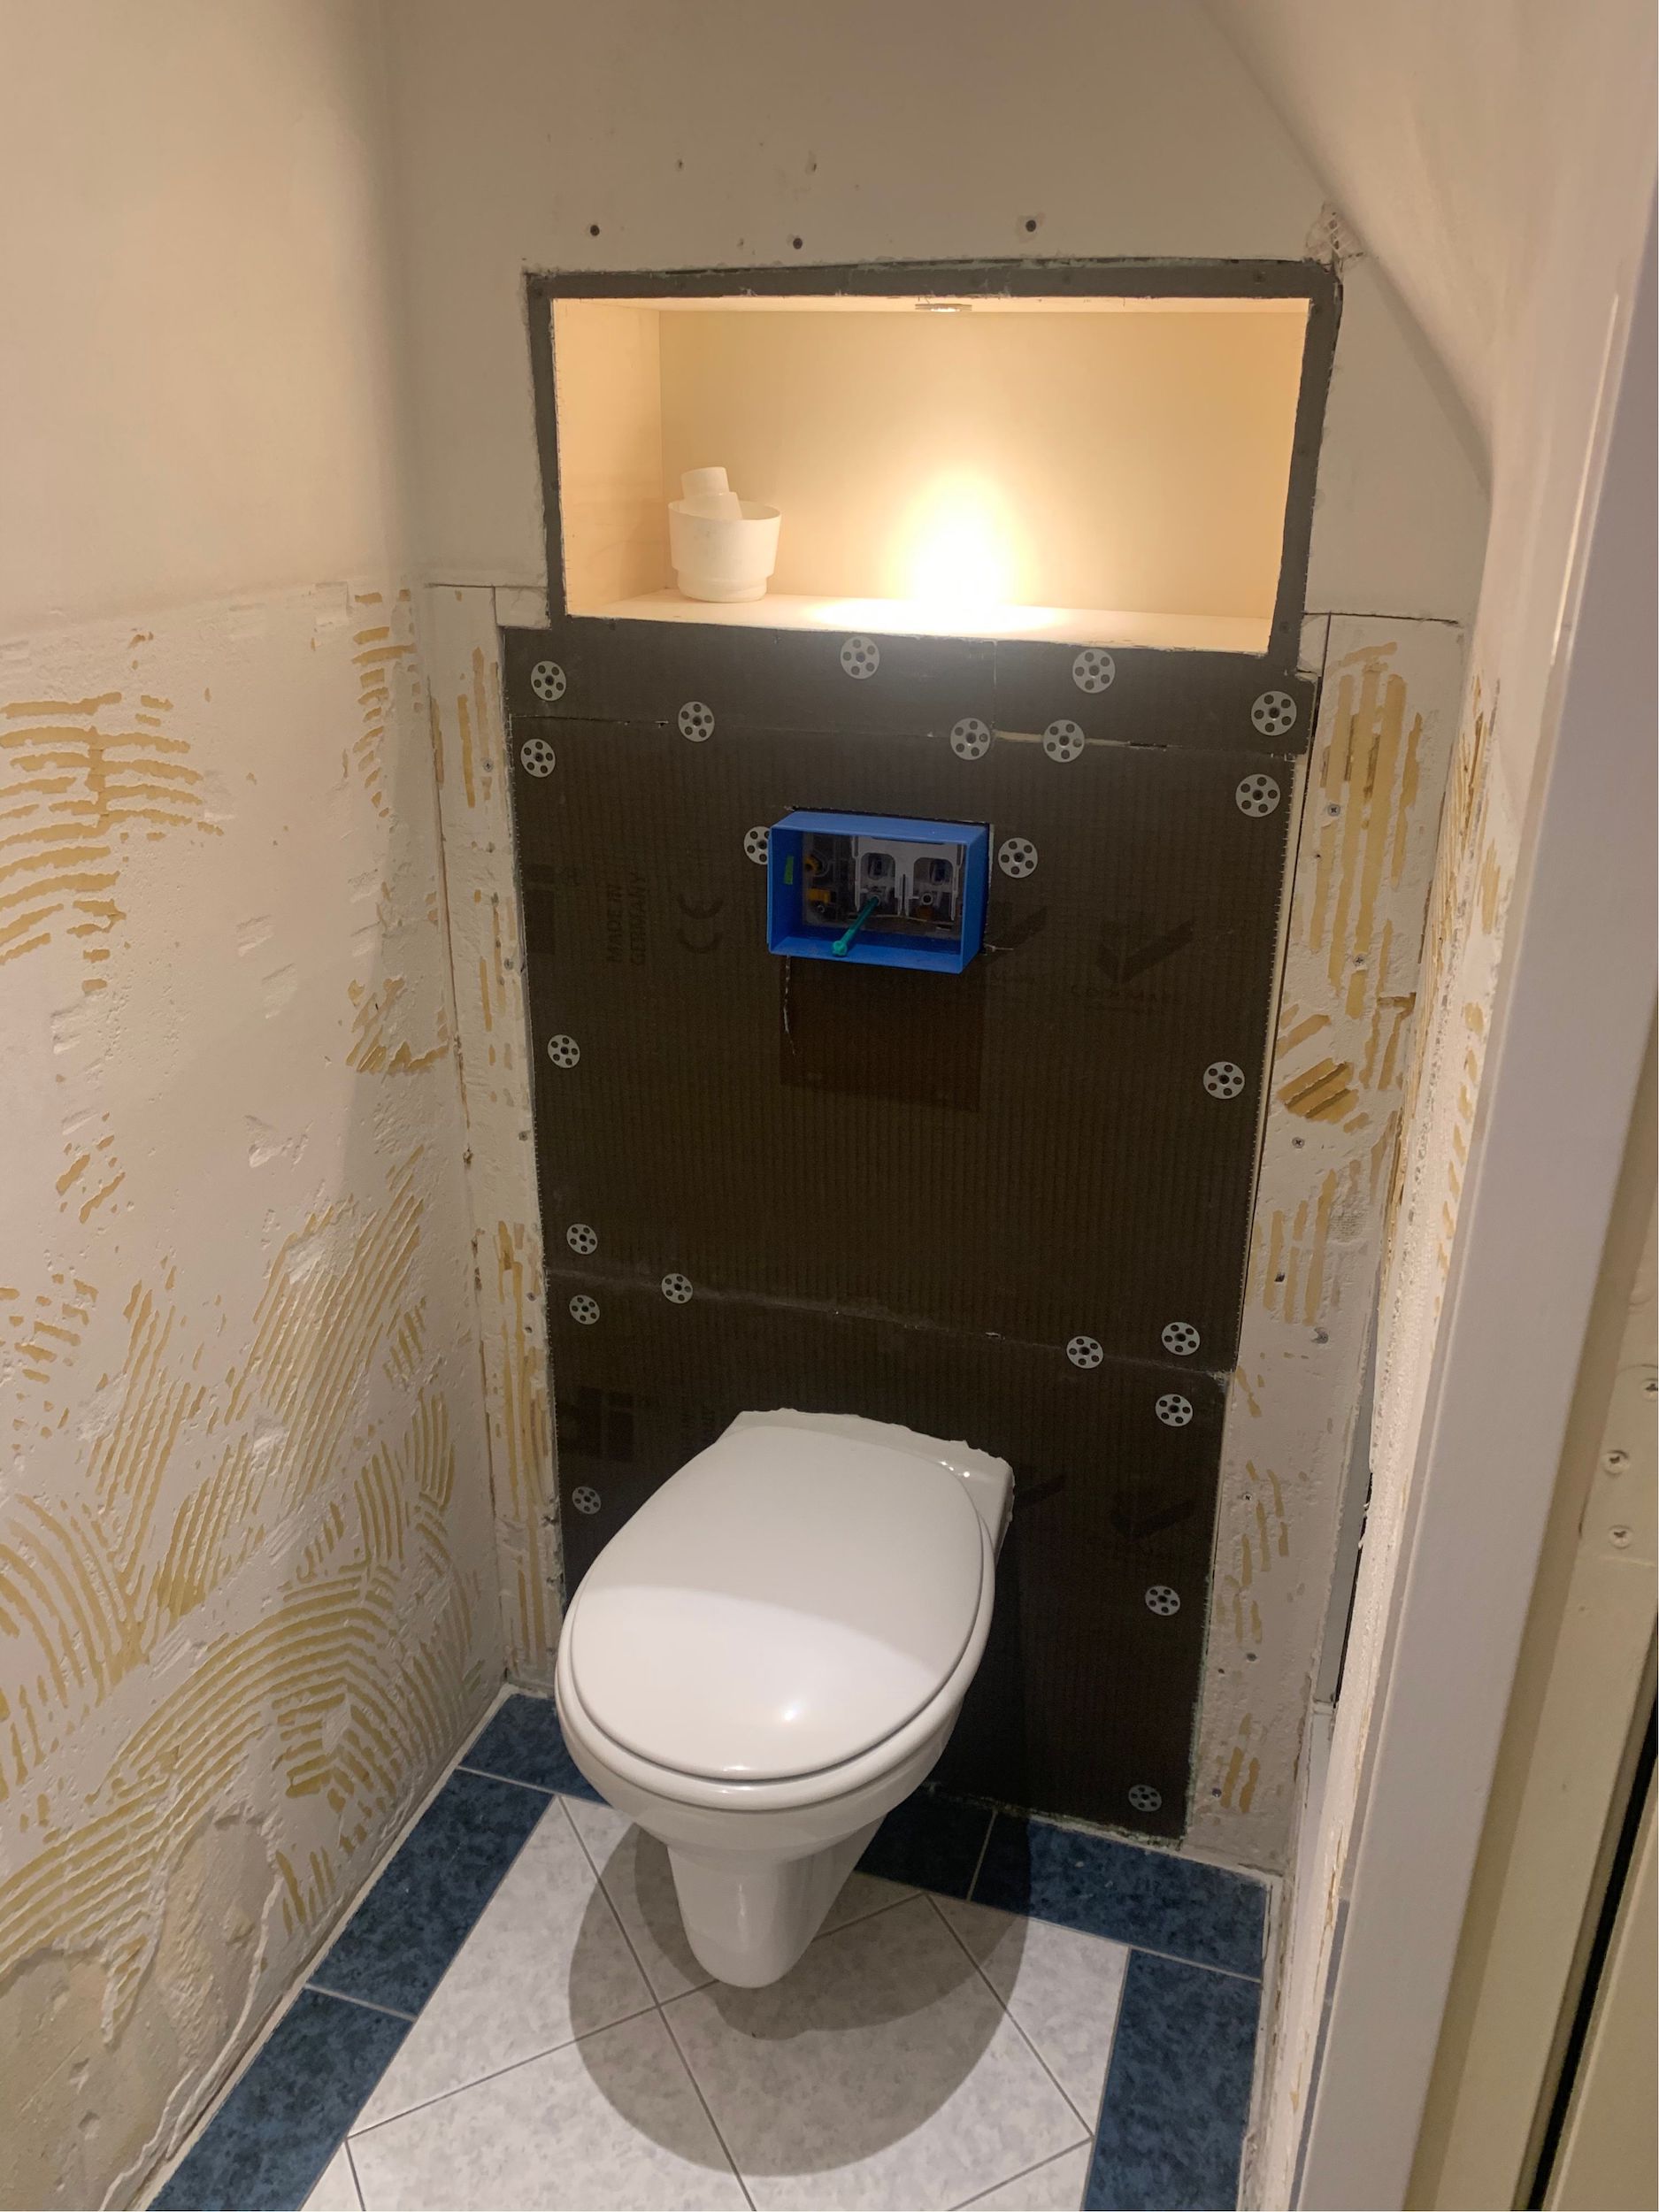 Bizot Installatietechniek – Project toilet verbouwing 2021 3